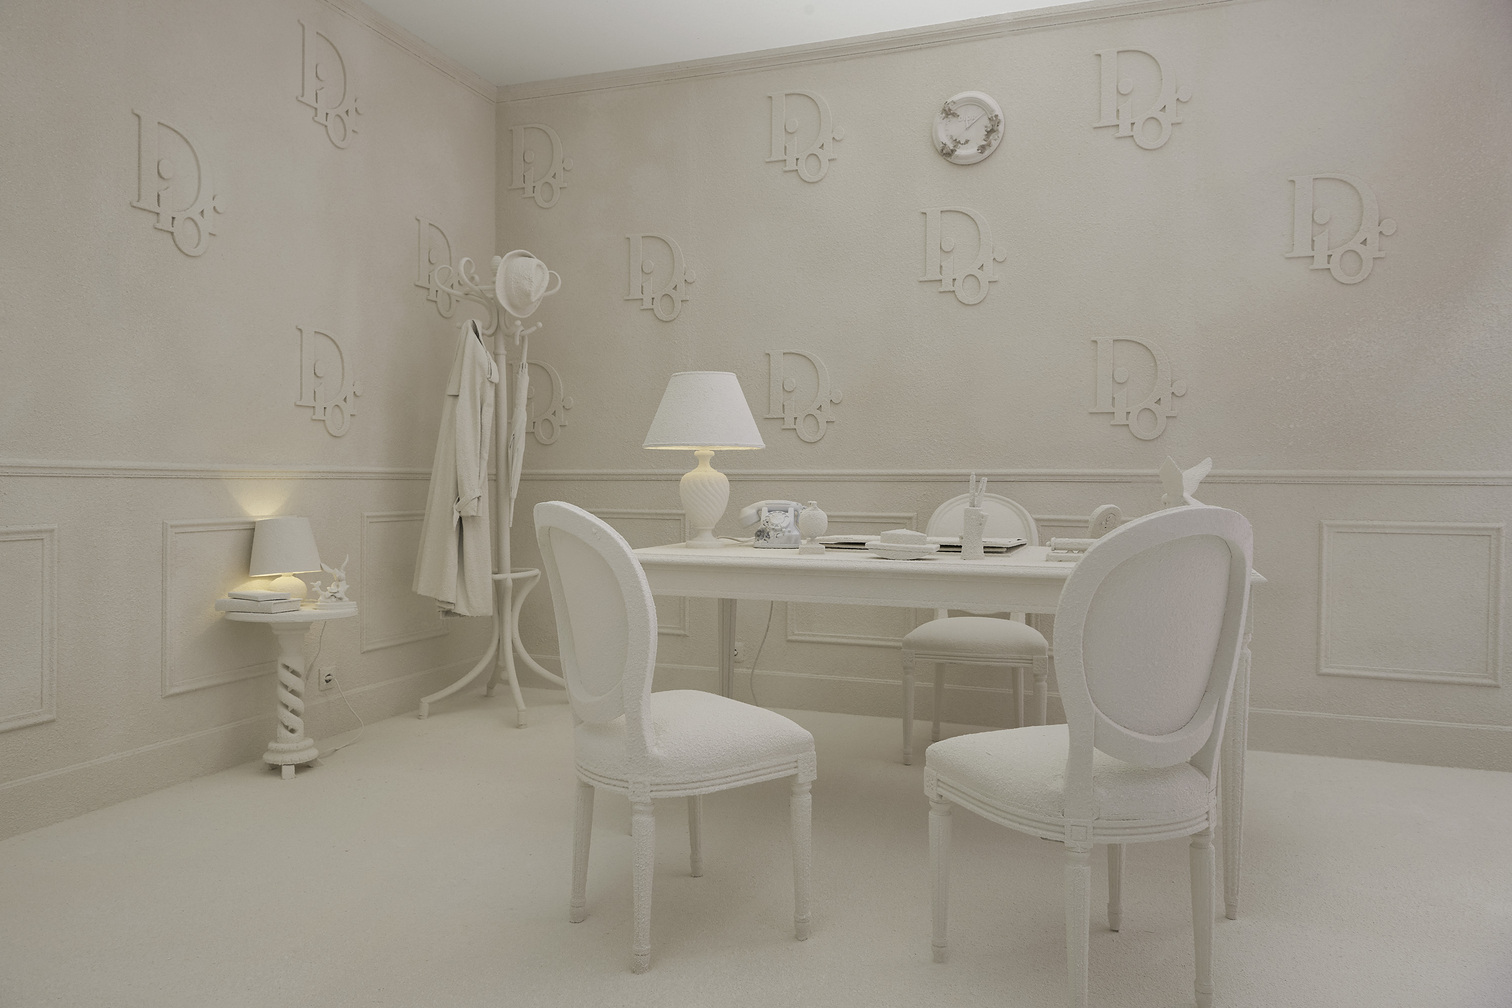 2020 年 Dior 與 Daniel Arsham 打造春夏男裝系列，在參與設計前特別造訪 Dior 博物館參觀迪奧先生生前所用物品，再以極具個人特色的單色美學打造成純白色調的房間。